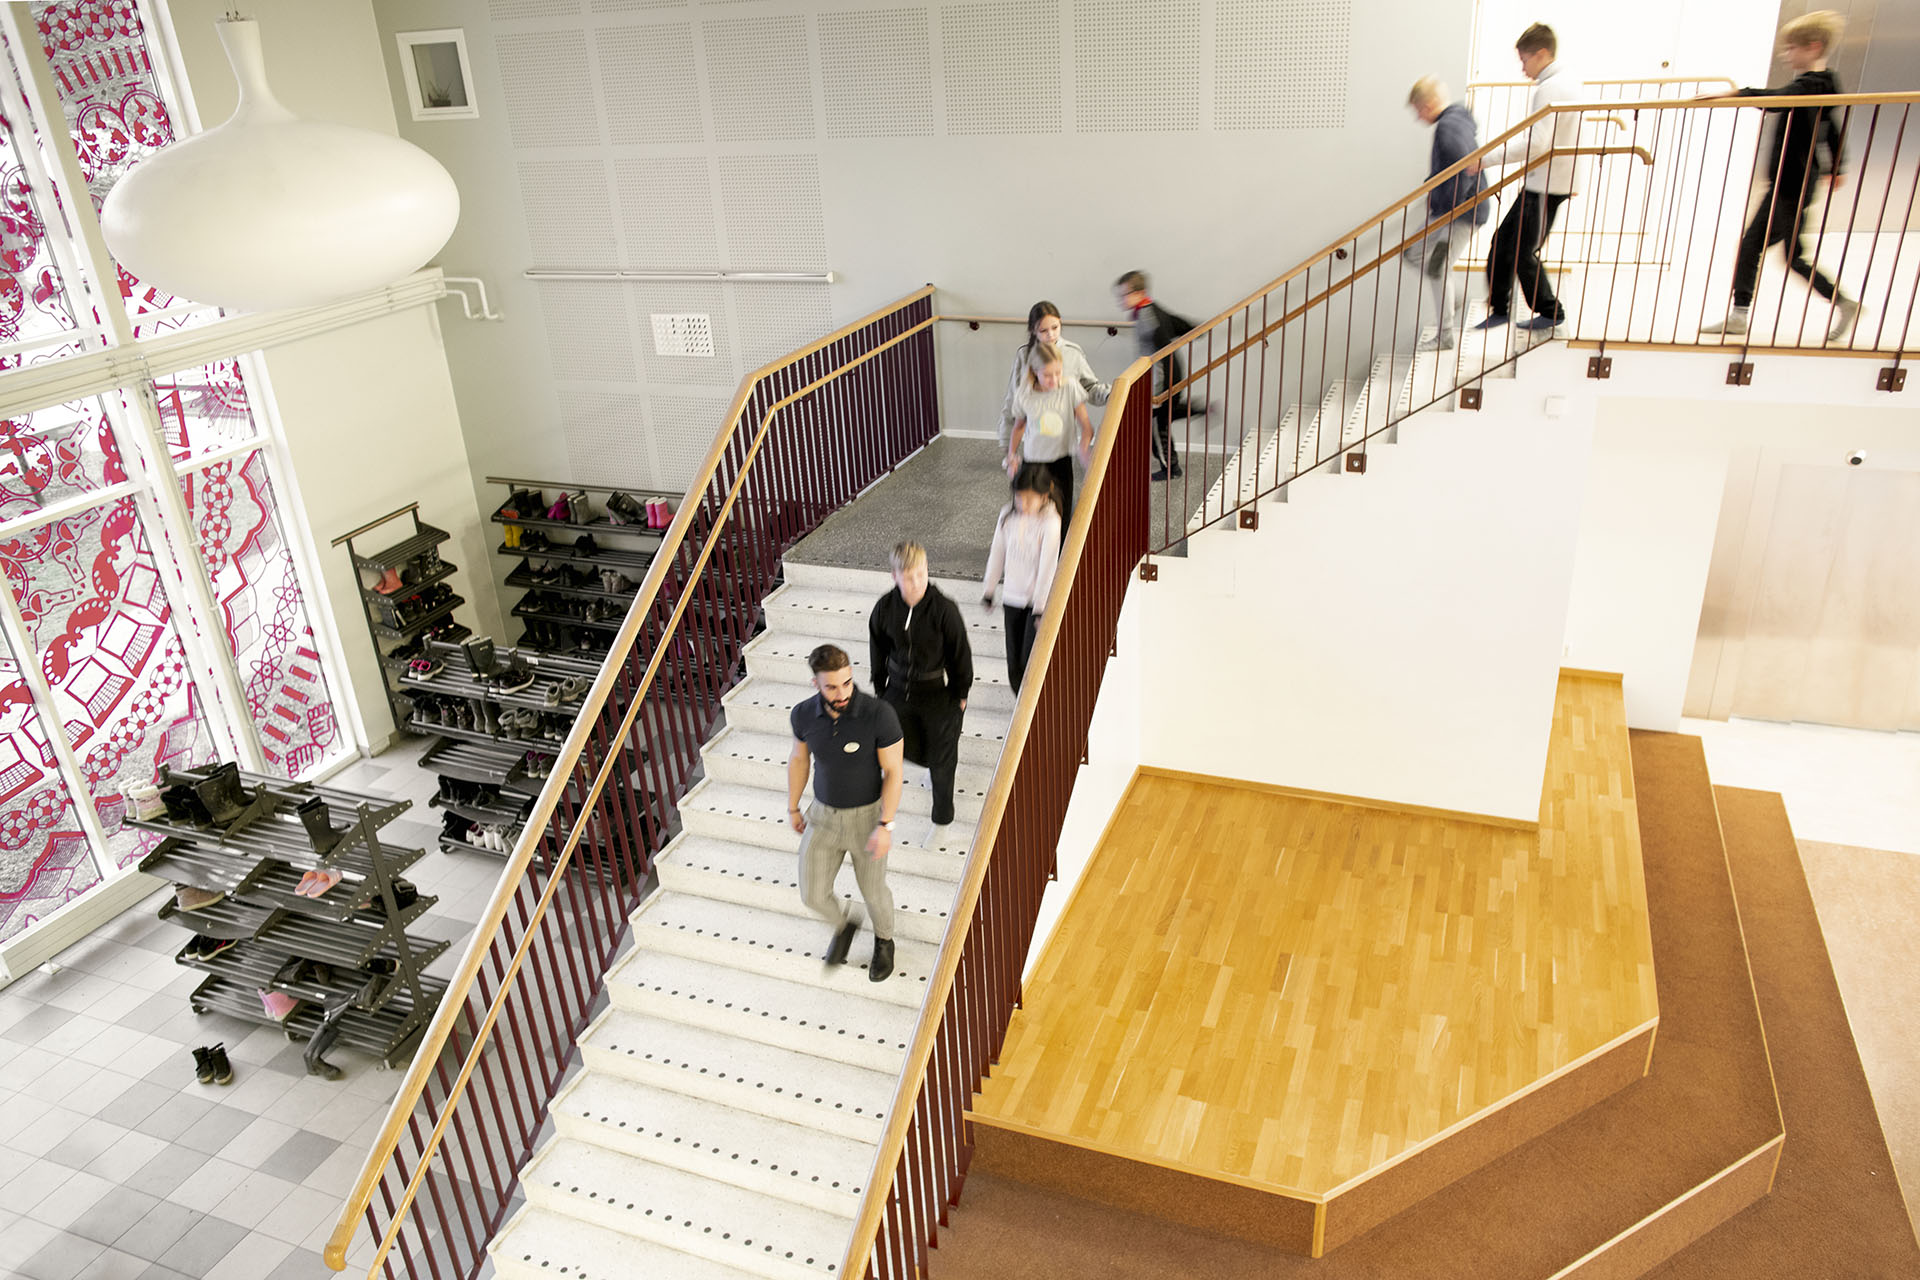 Oppilaat kävelevät koulun portaita yläkerrasta alakerran aulaan. Akustointi takaa miellyttävän sisäilmaston.